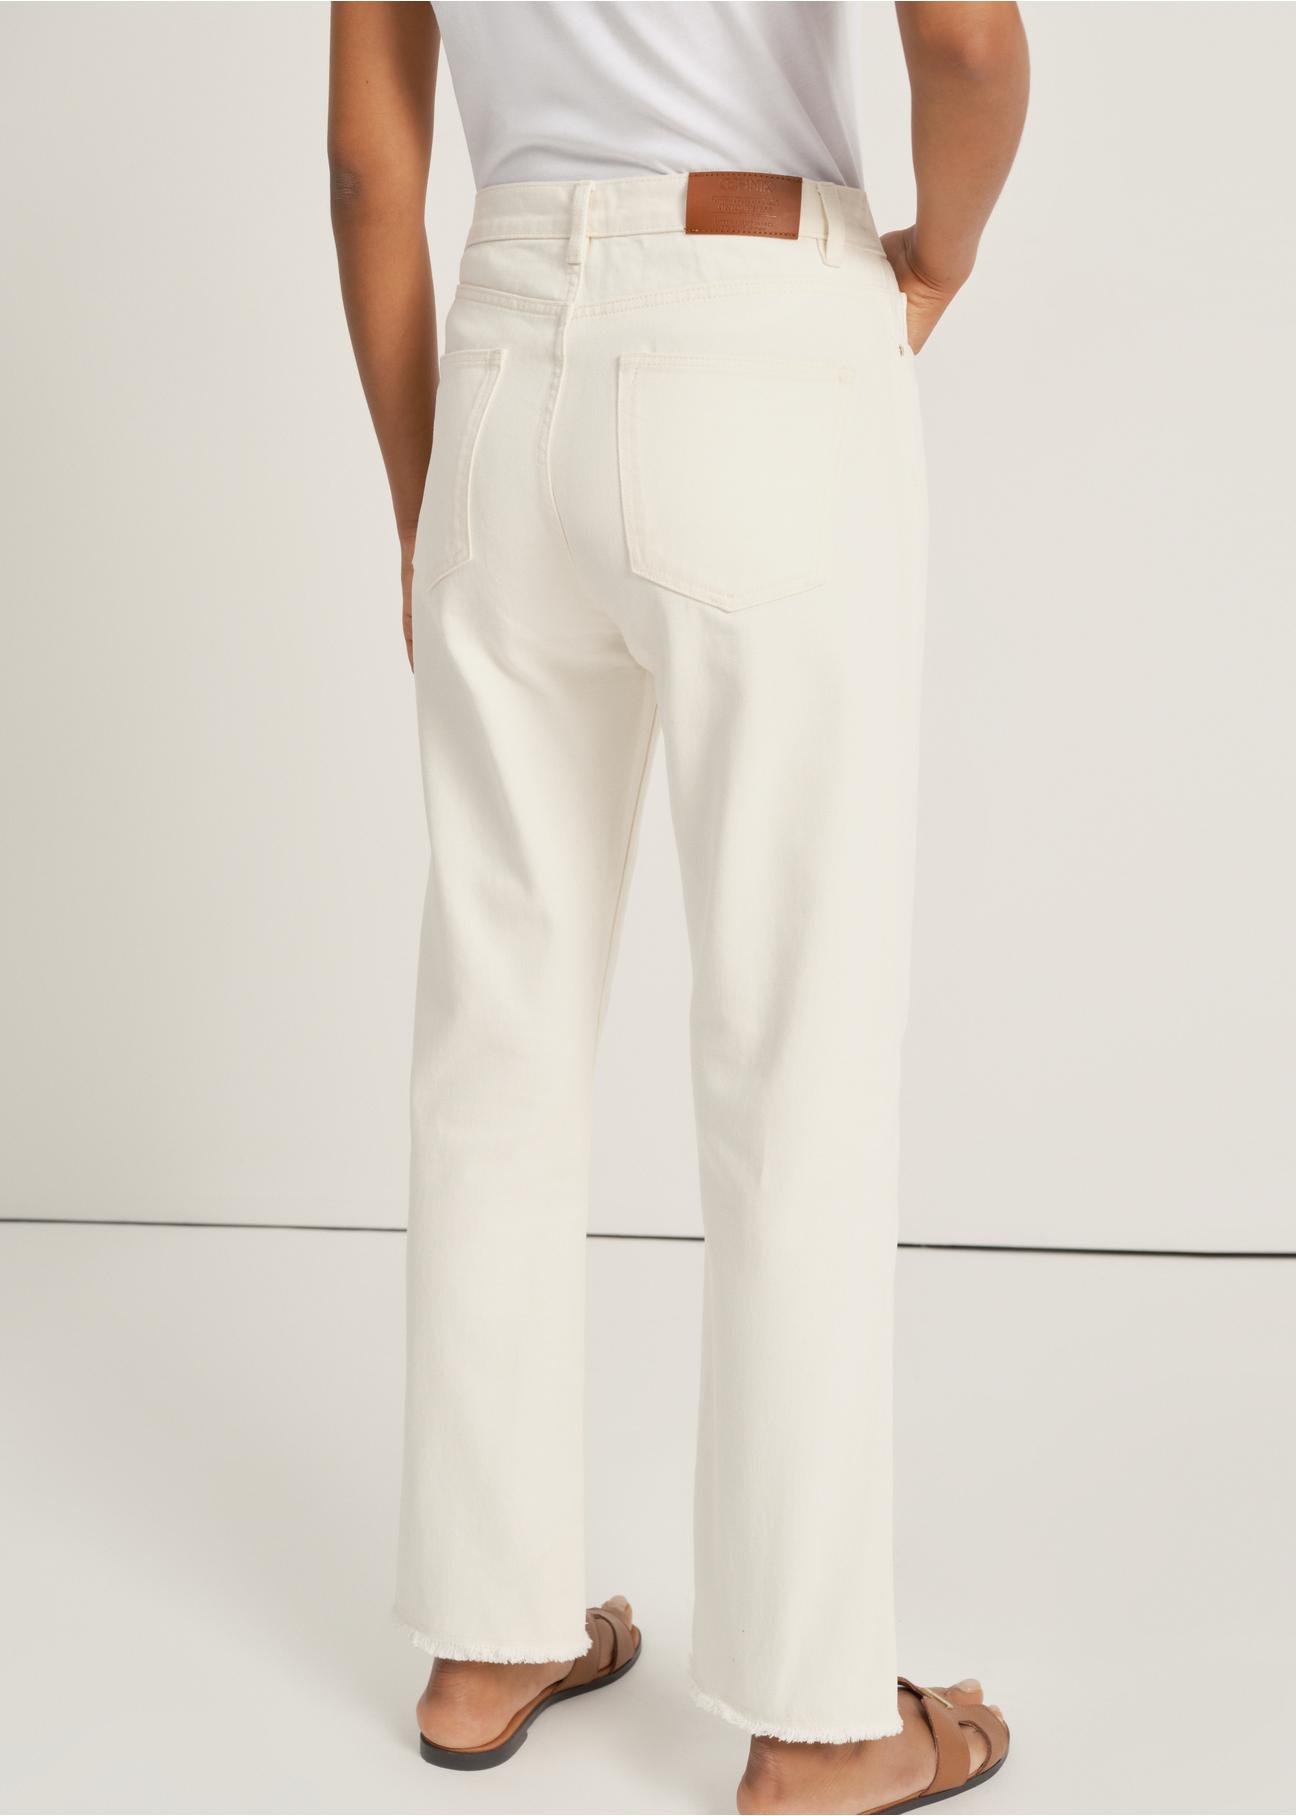 Kremowe spodnie damskie SPODT-0078-12(W24)